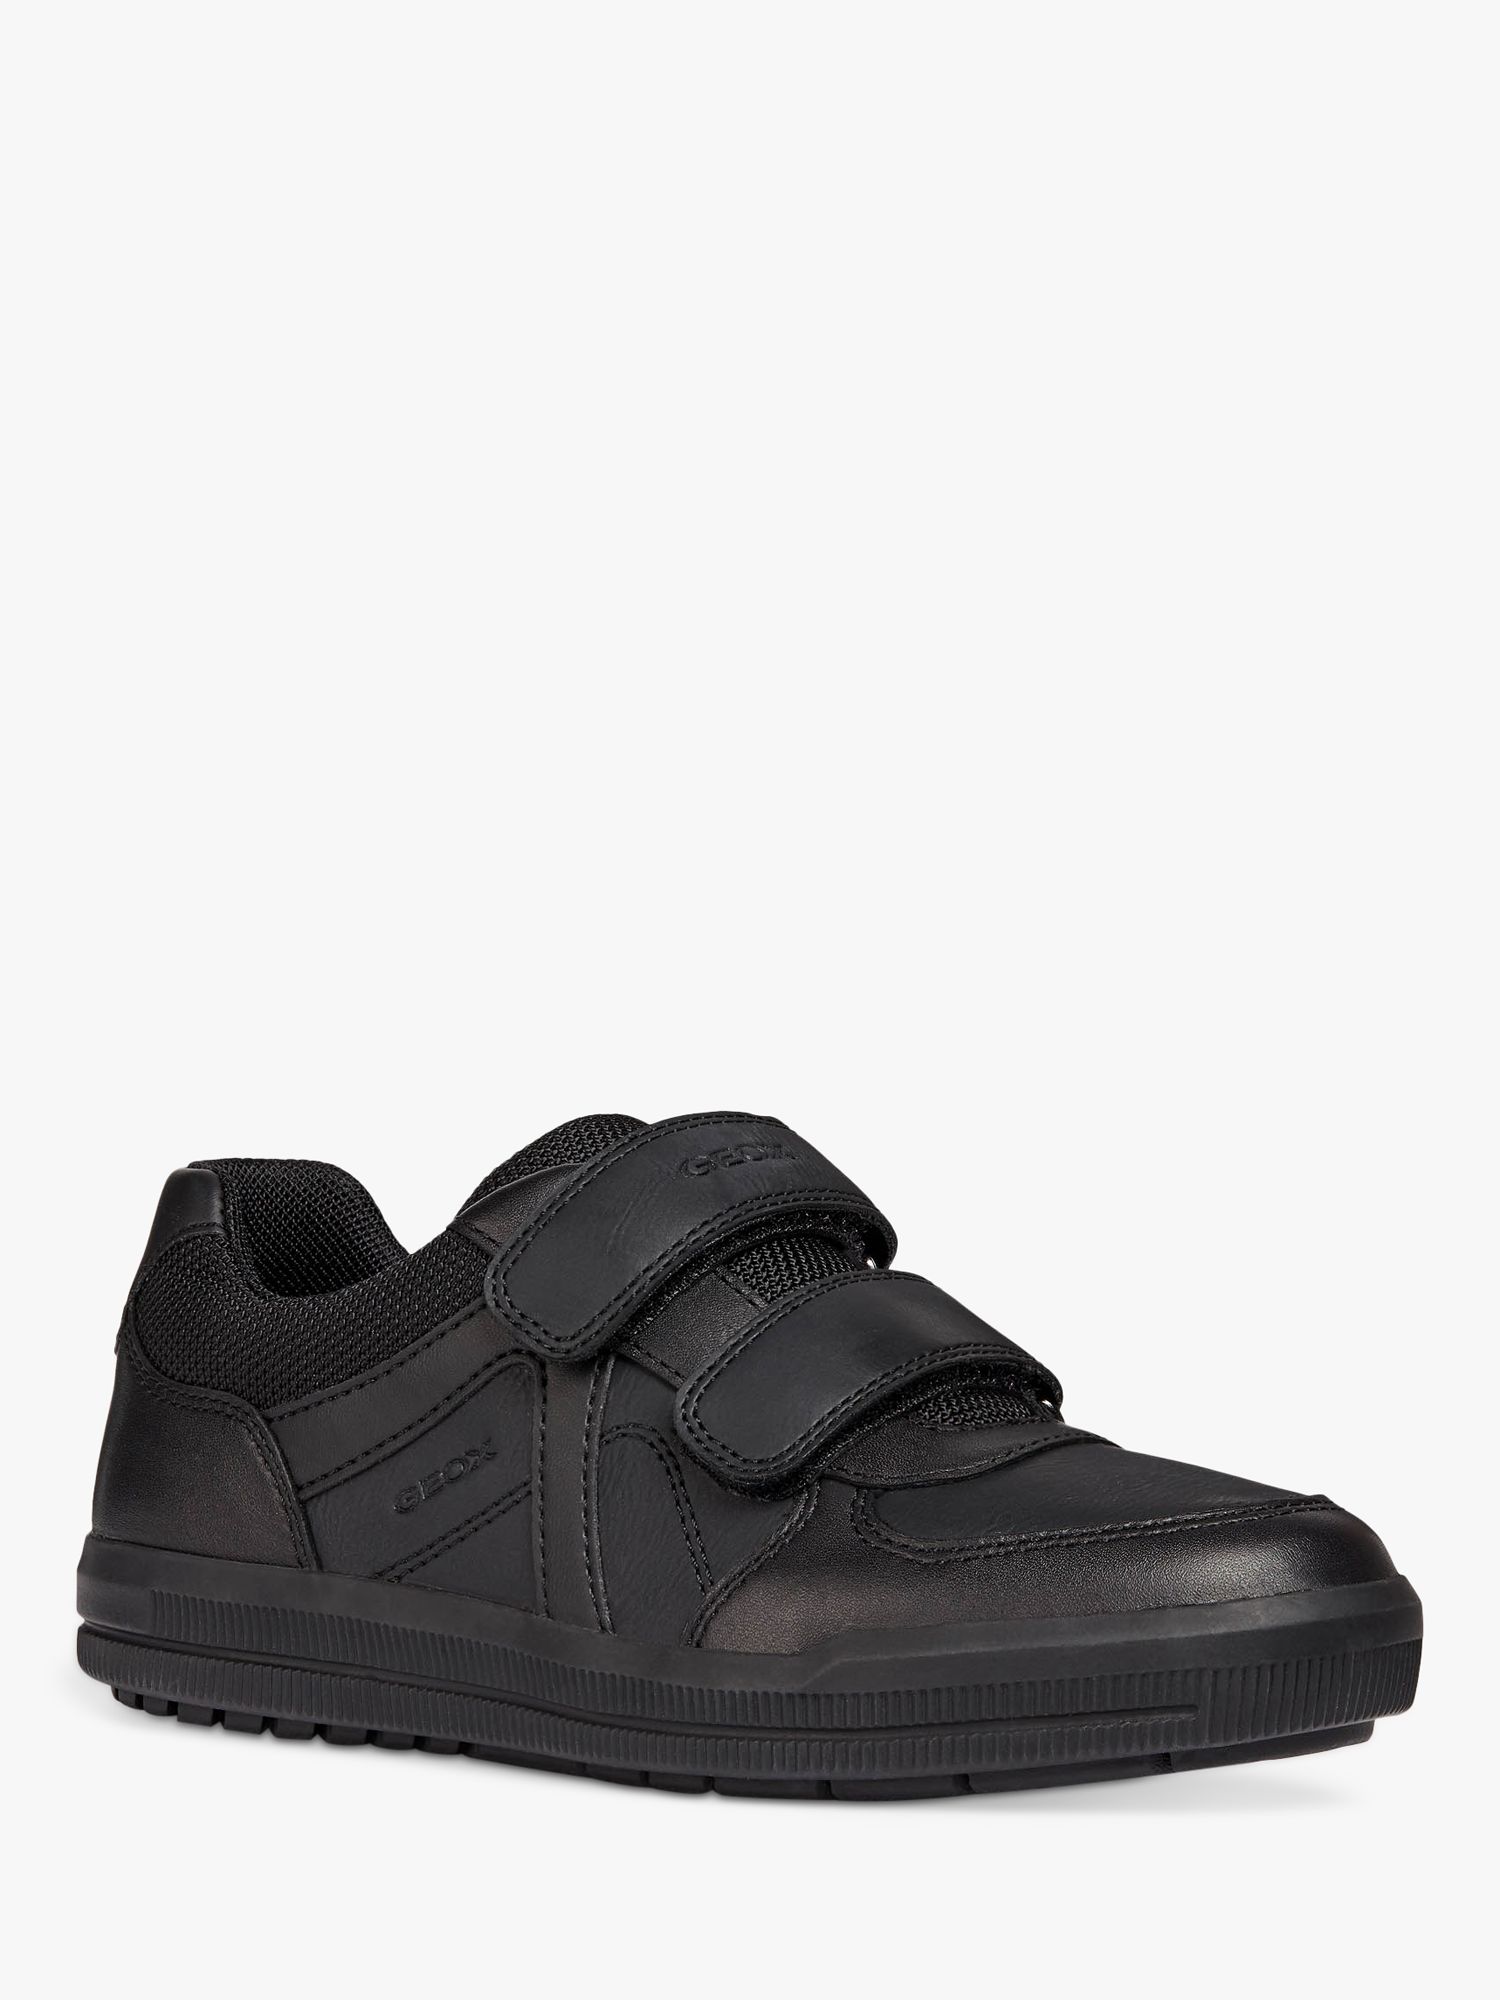 Geox Kids' J Arzach B.E School Shoes, Black, 33